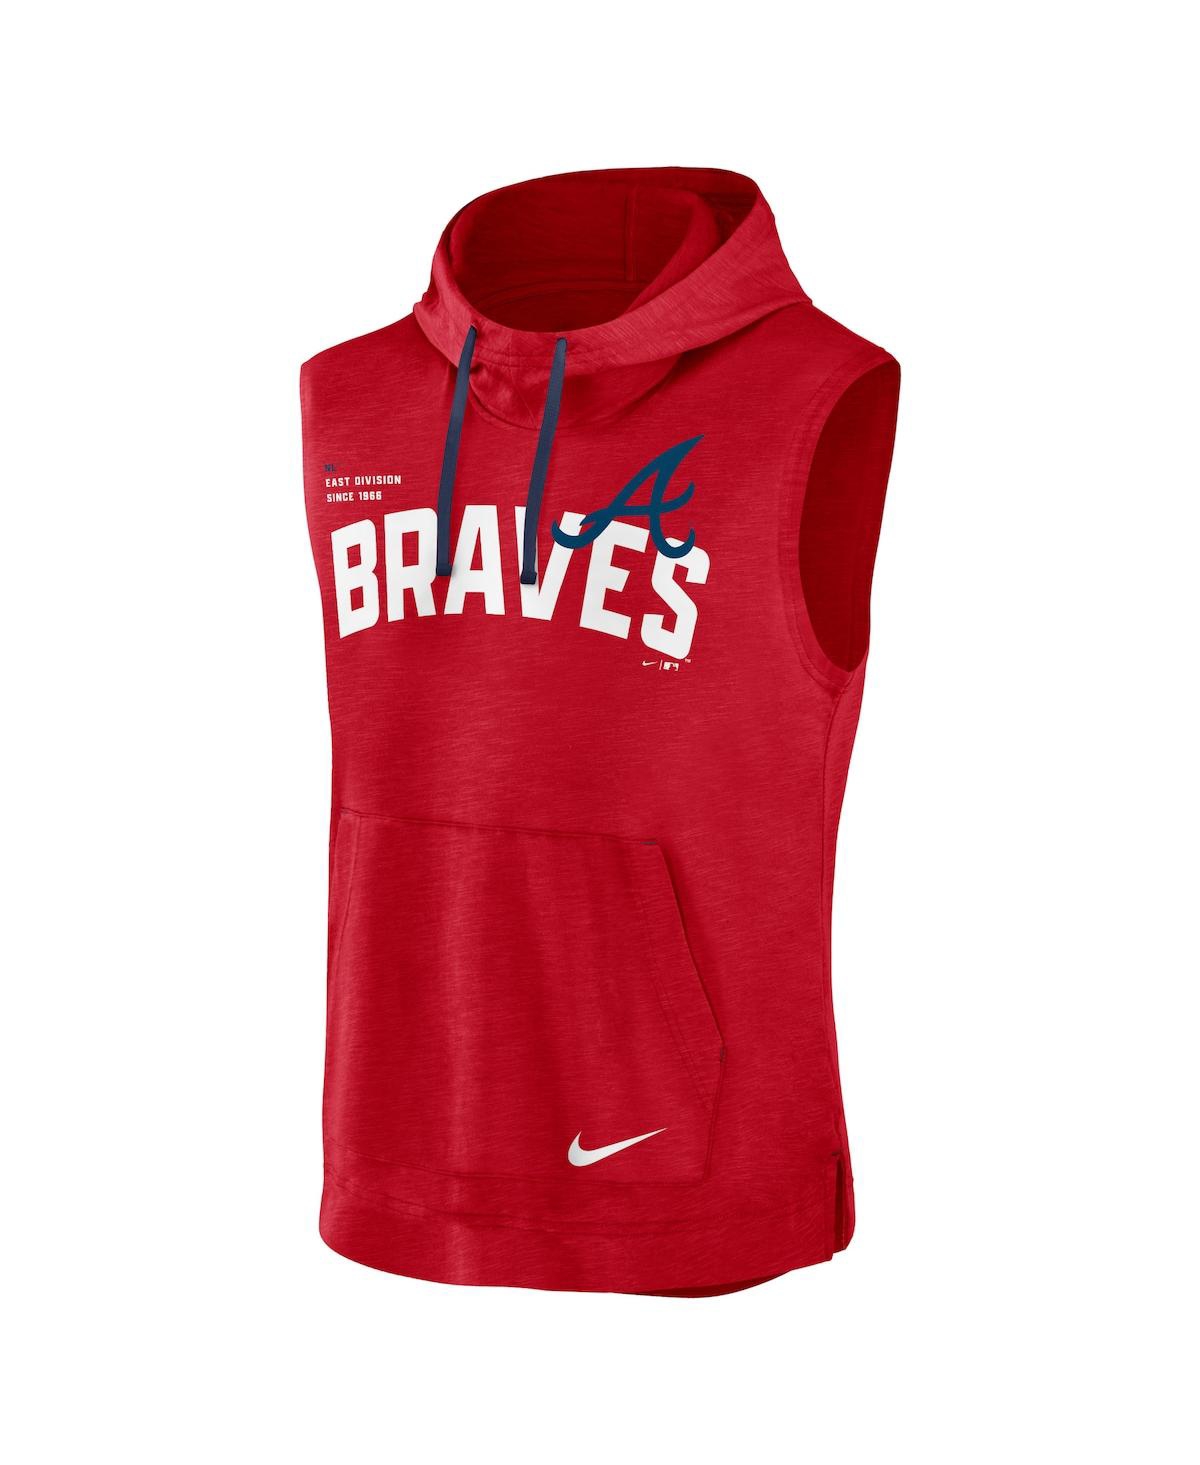 Men's Nike Red Atlanta Braves Athletic Sleeveless Hooded T-Shirt